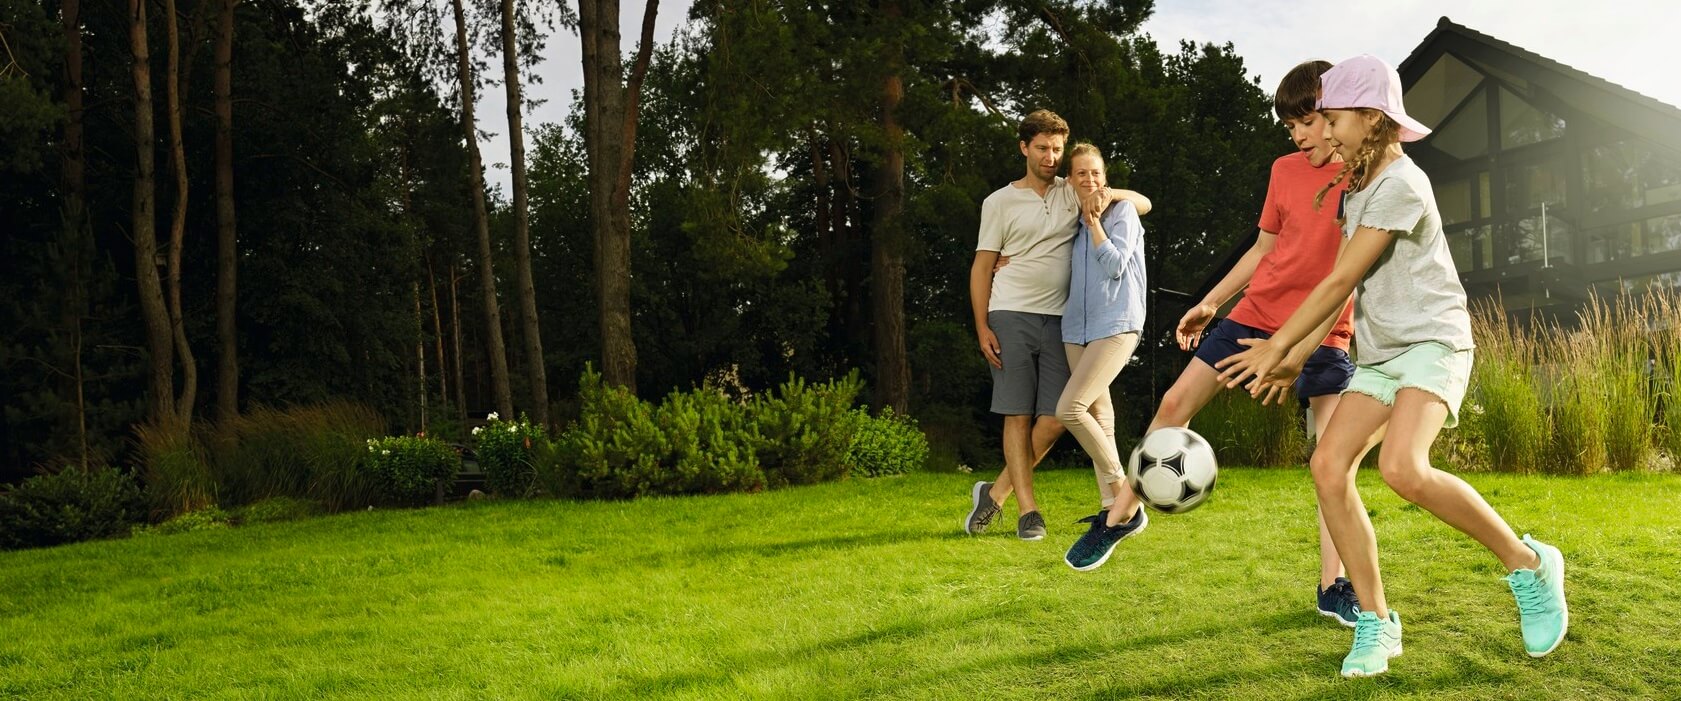 Privathaftpflichtversicherung: Eine vierköpfige Familie im Garten Tochter und Sohn spielen Fußball. Vater und Mutter schauen im Hintergrund zu.